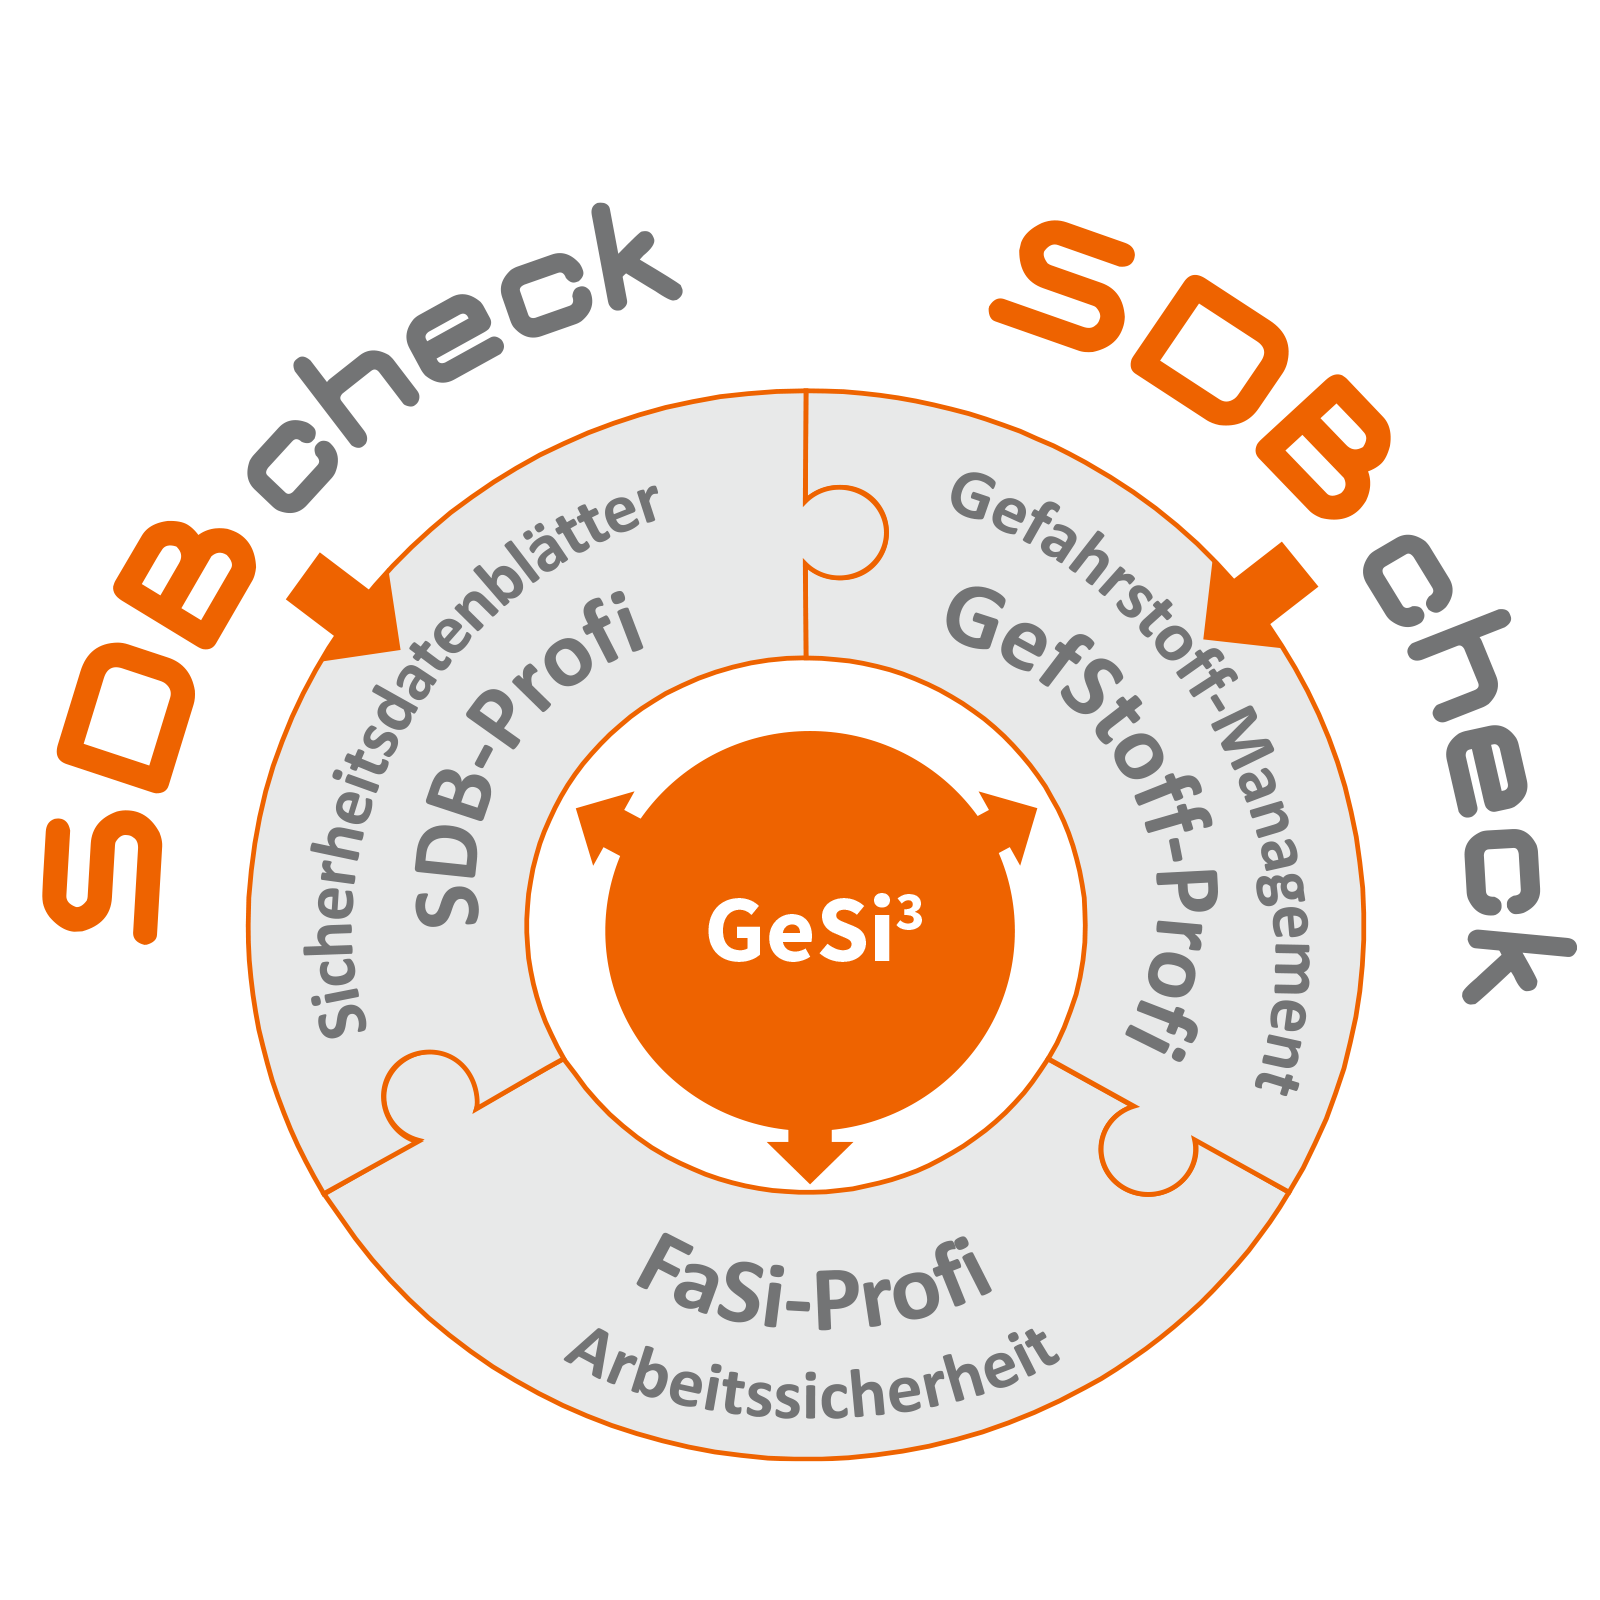 Anknüpfungspunkte des Tools SDBcheck® an die Software GeSi³